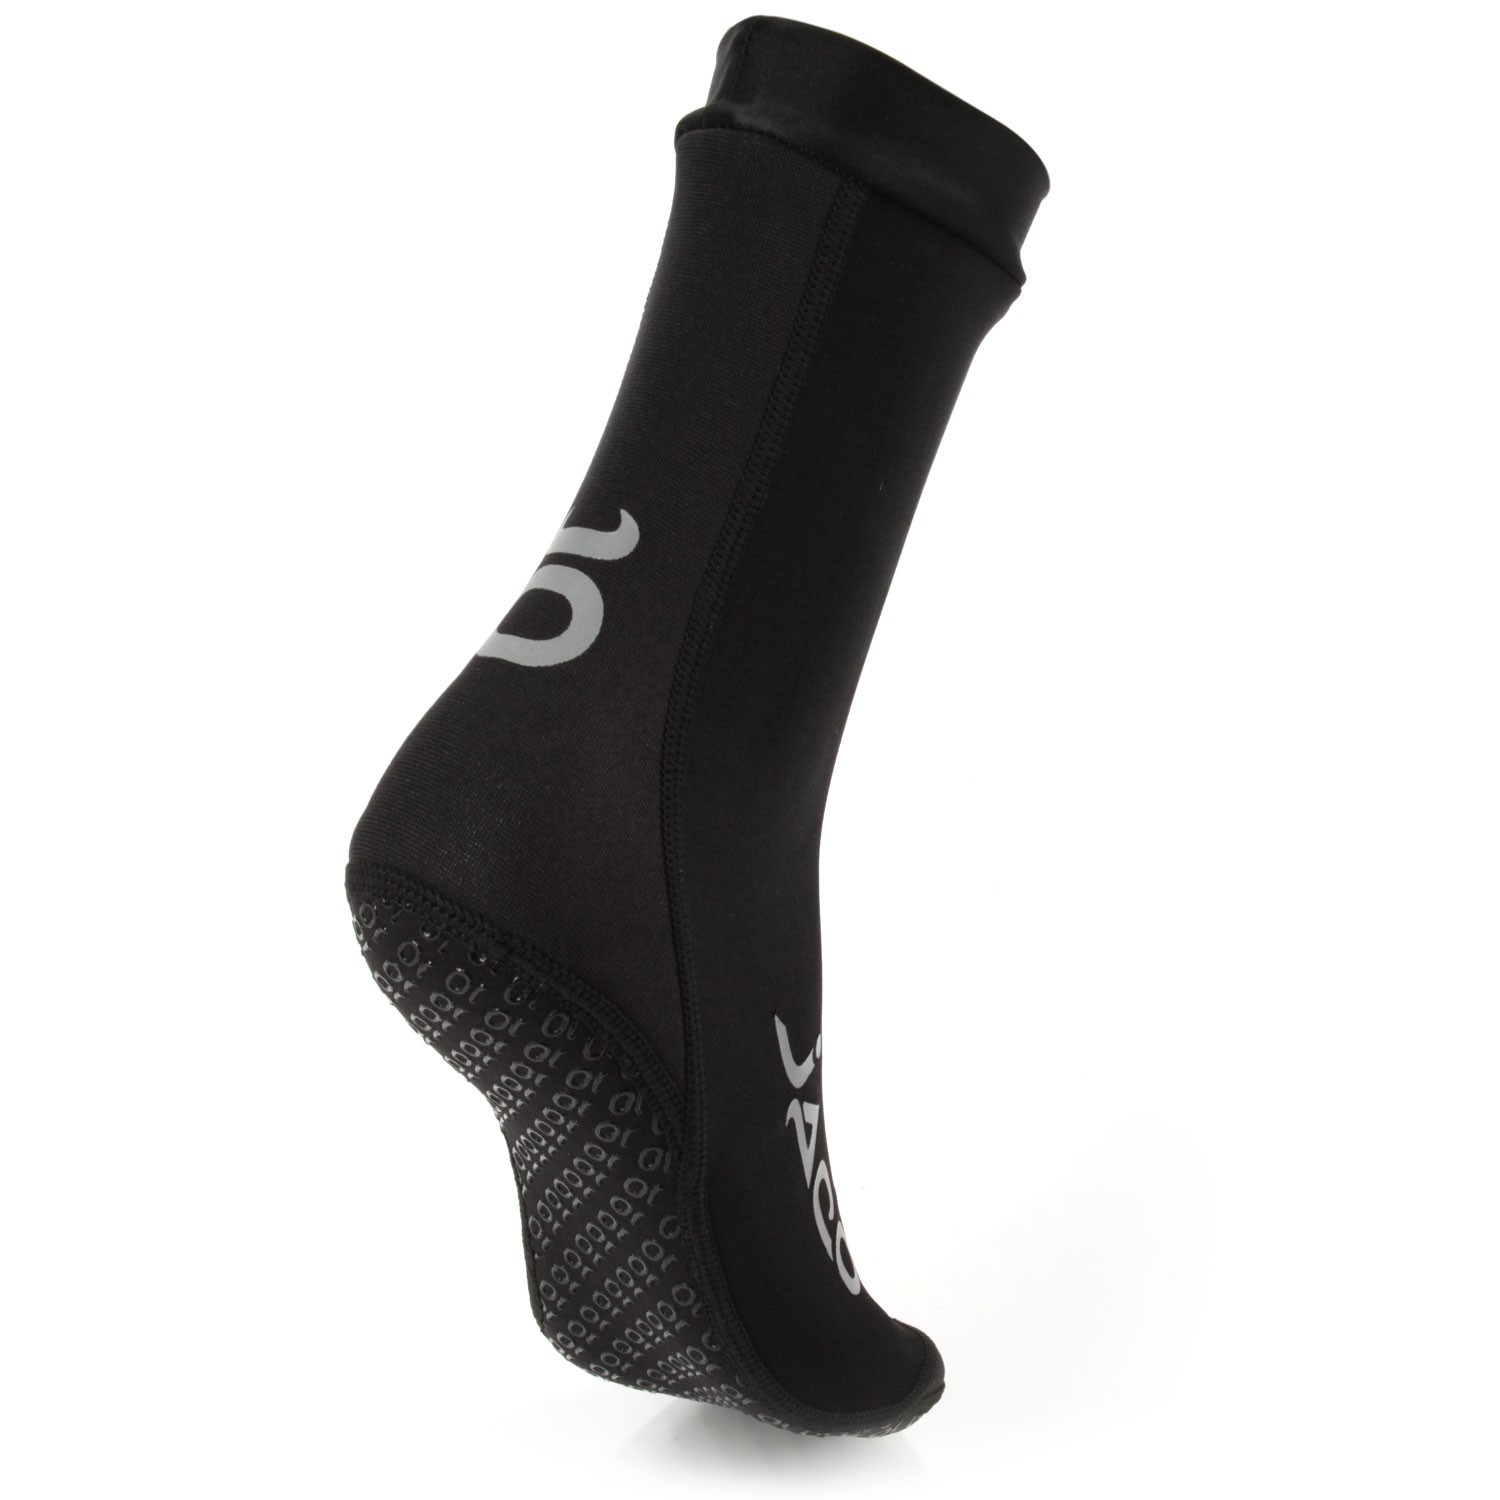 https://www.jacoathletics.com/wp-content/uploads/2018/04/Hybrid-Training-Socks-Black_1.jpg